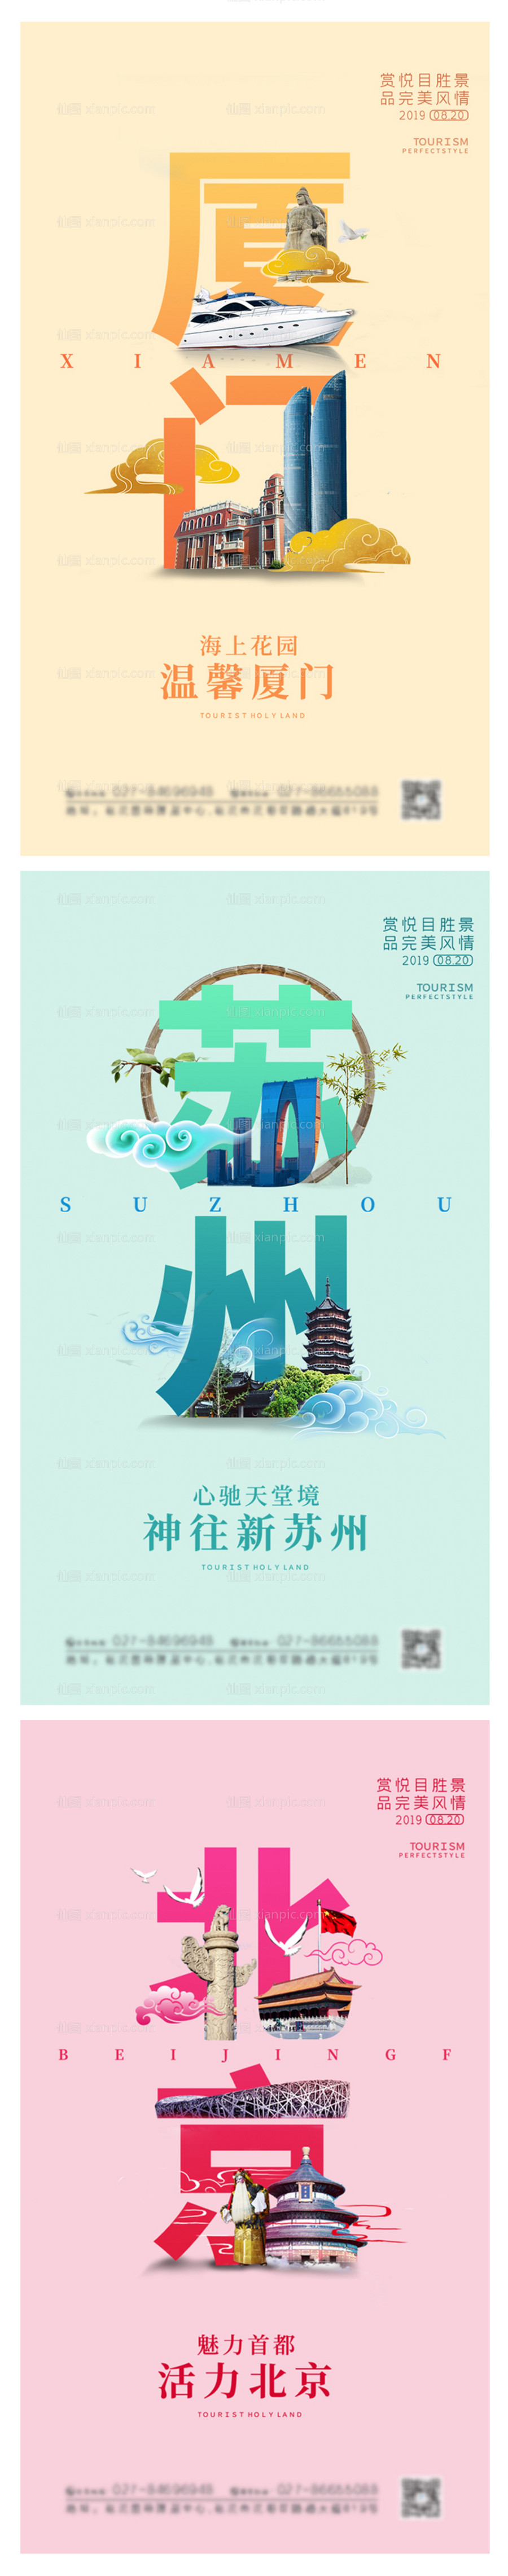 素材乐-厦门苏州北京旅游景点系列海报